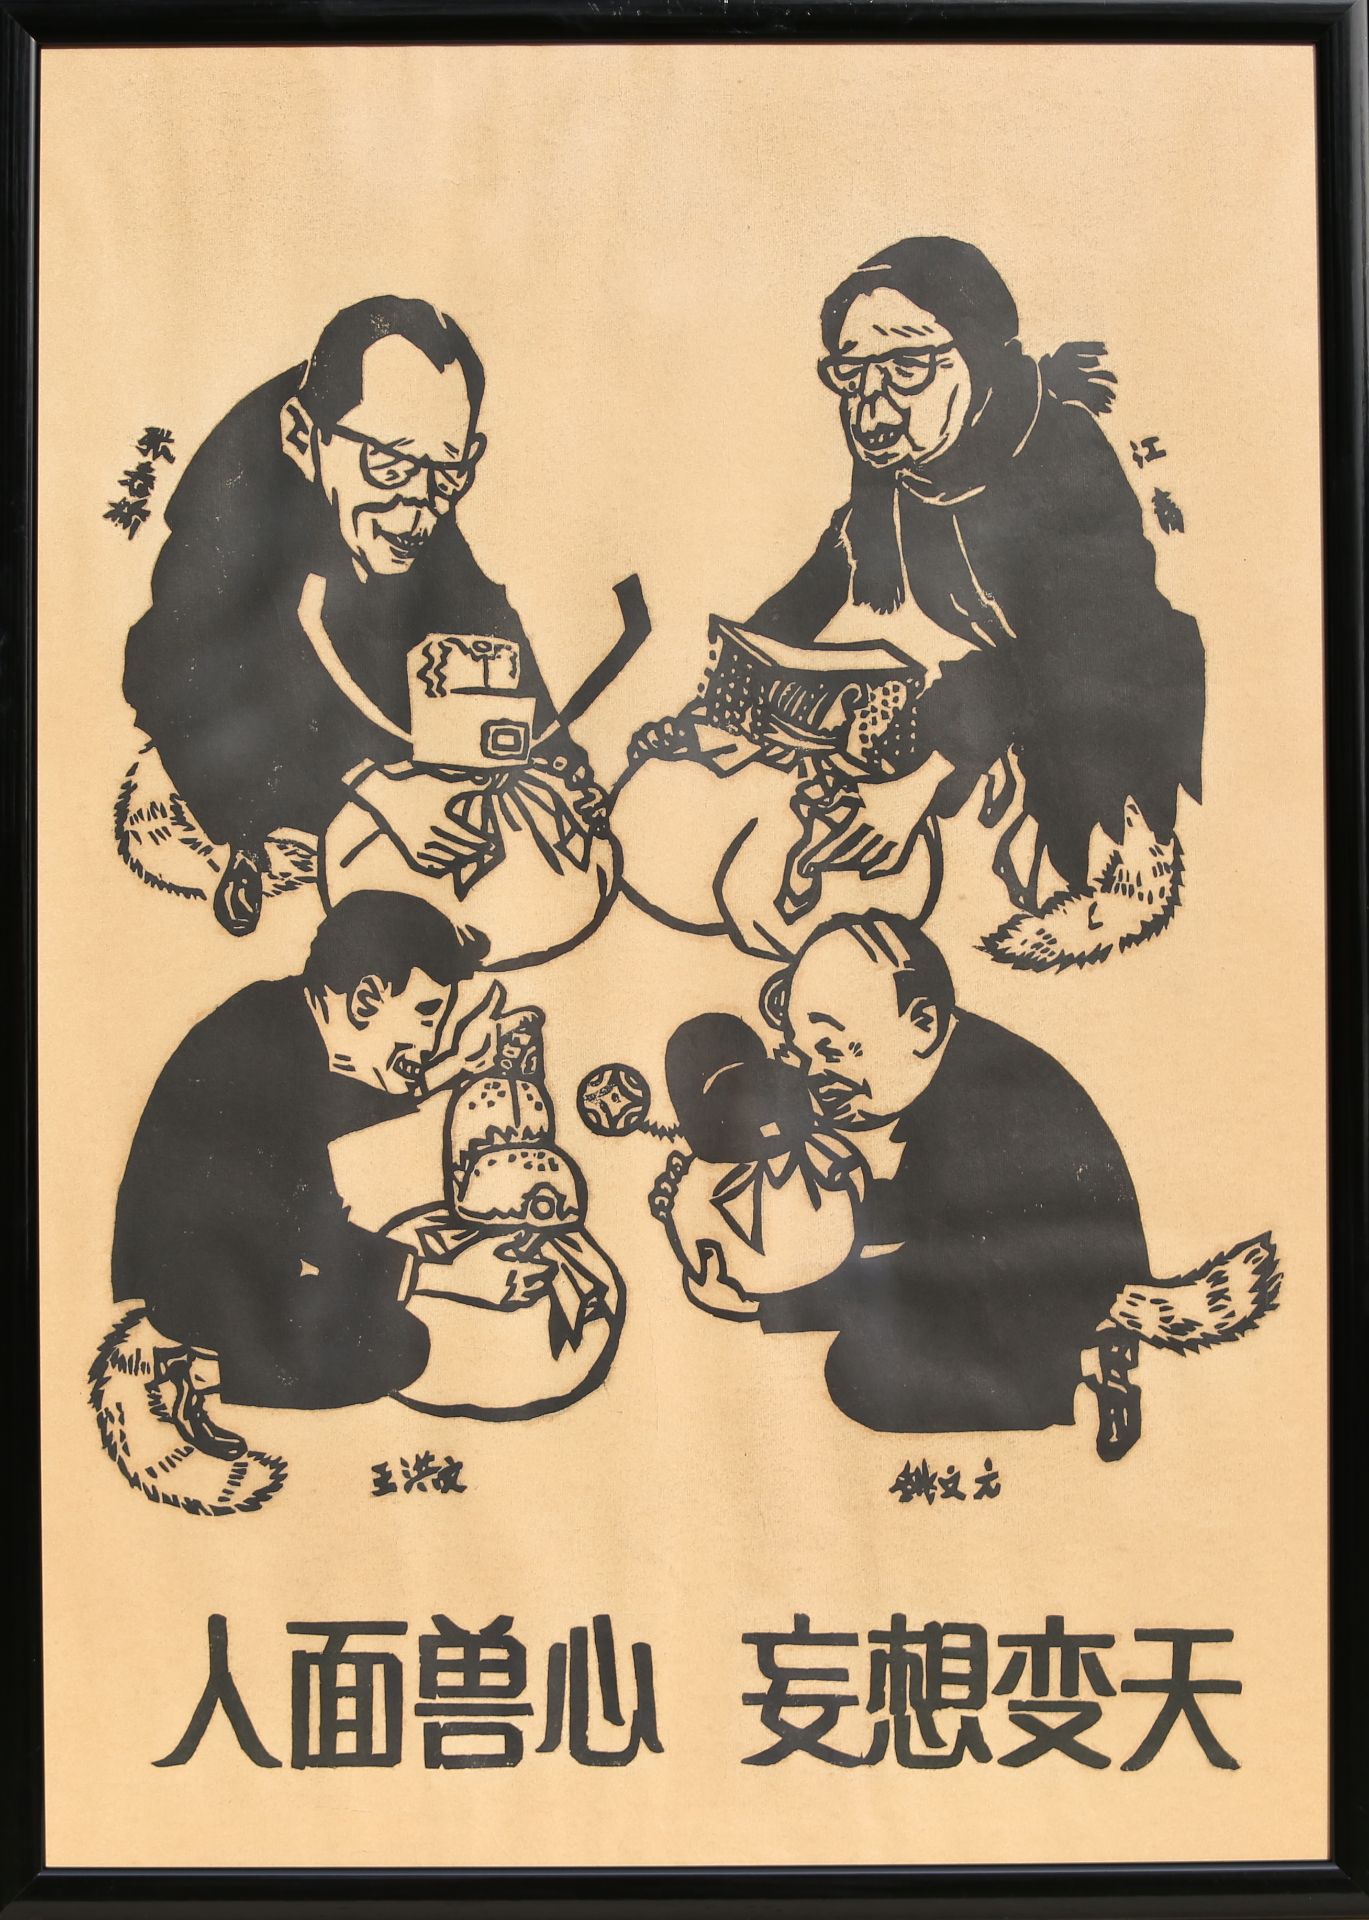 17 Affiches de propagande de la révolution culturelle chinoise Encadrée 75cm x 52cm - Bild 13 aus 17